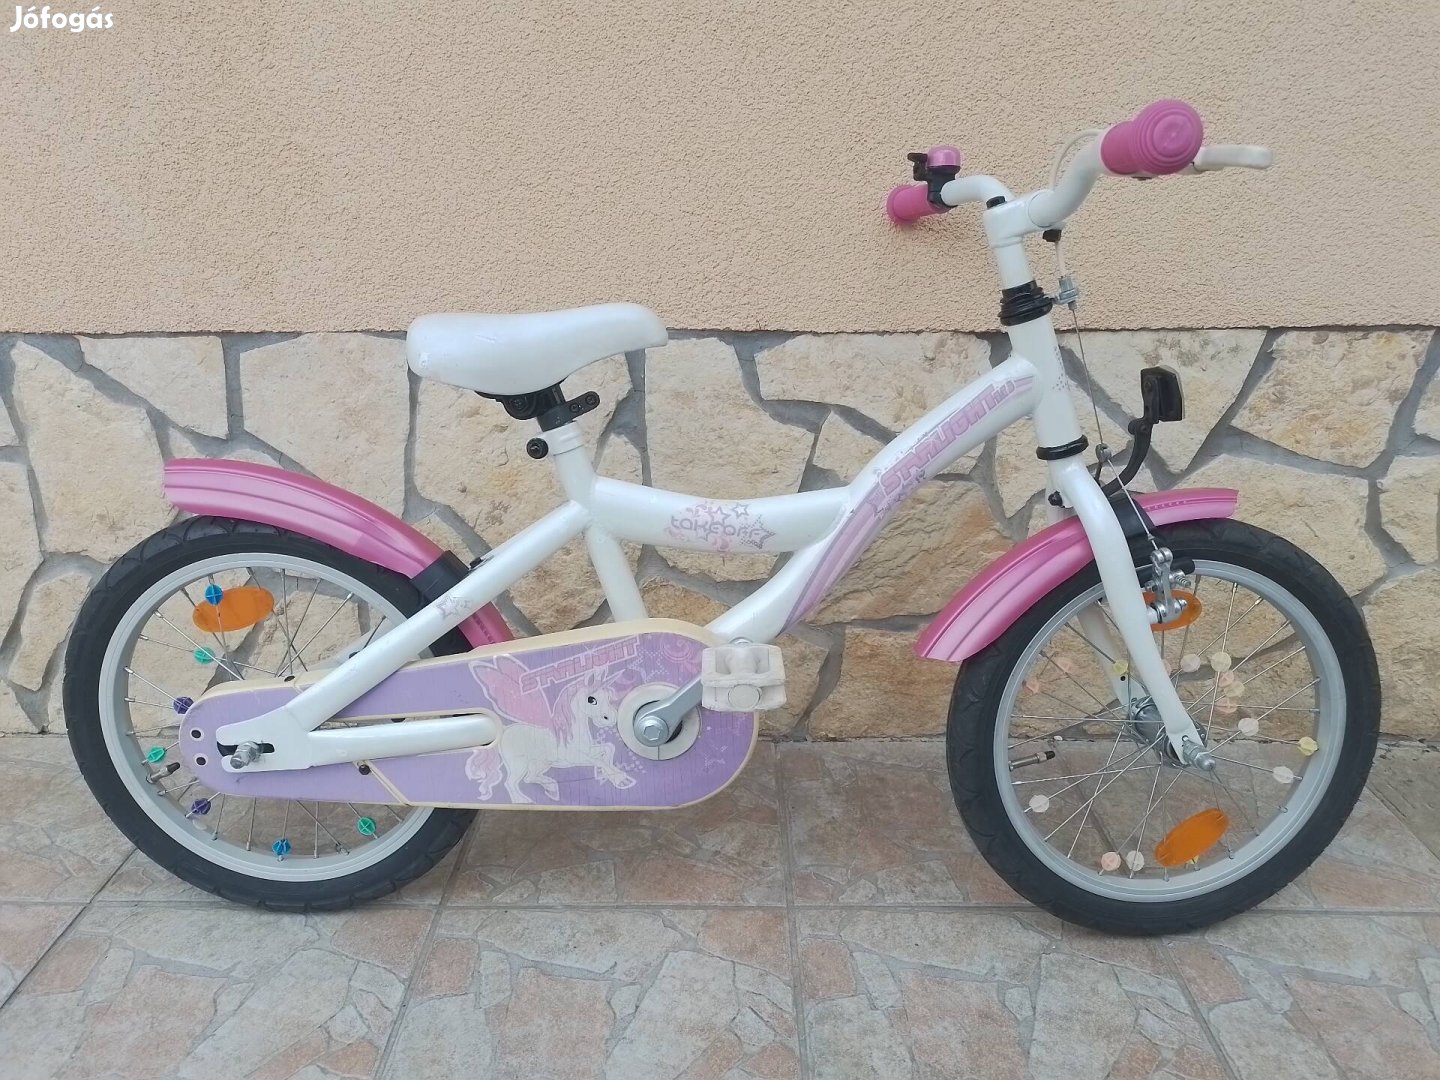 16-os Starlight kontrafékes kislány kerékpár bicikli.